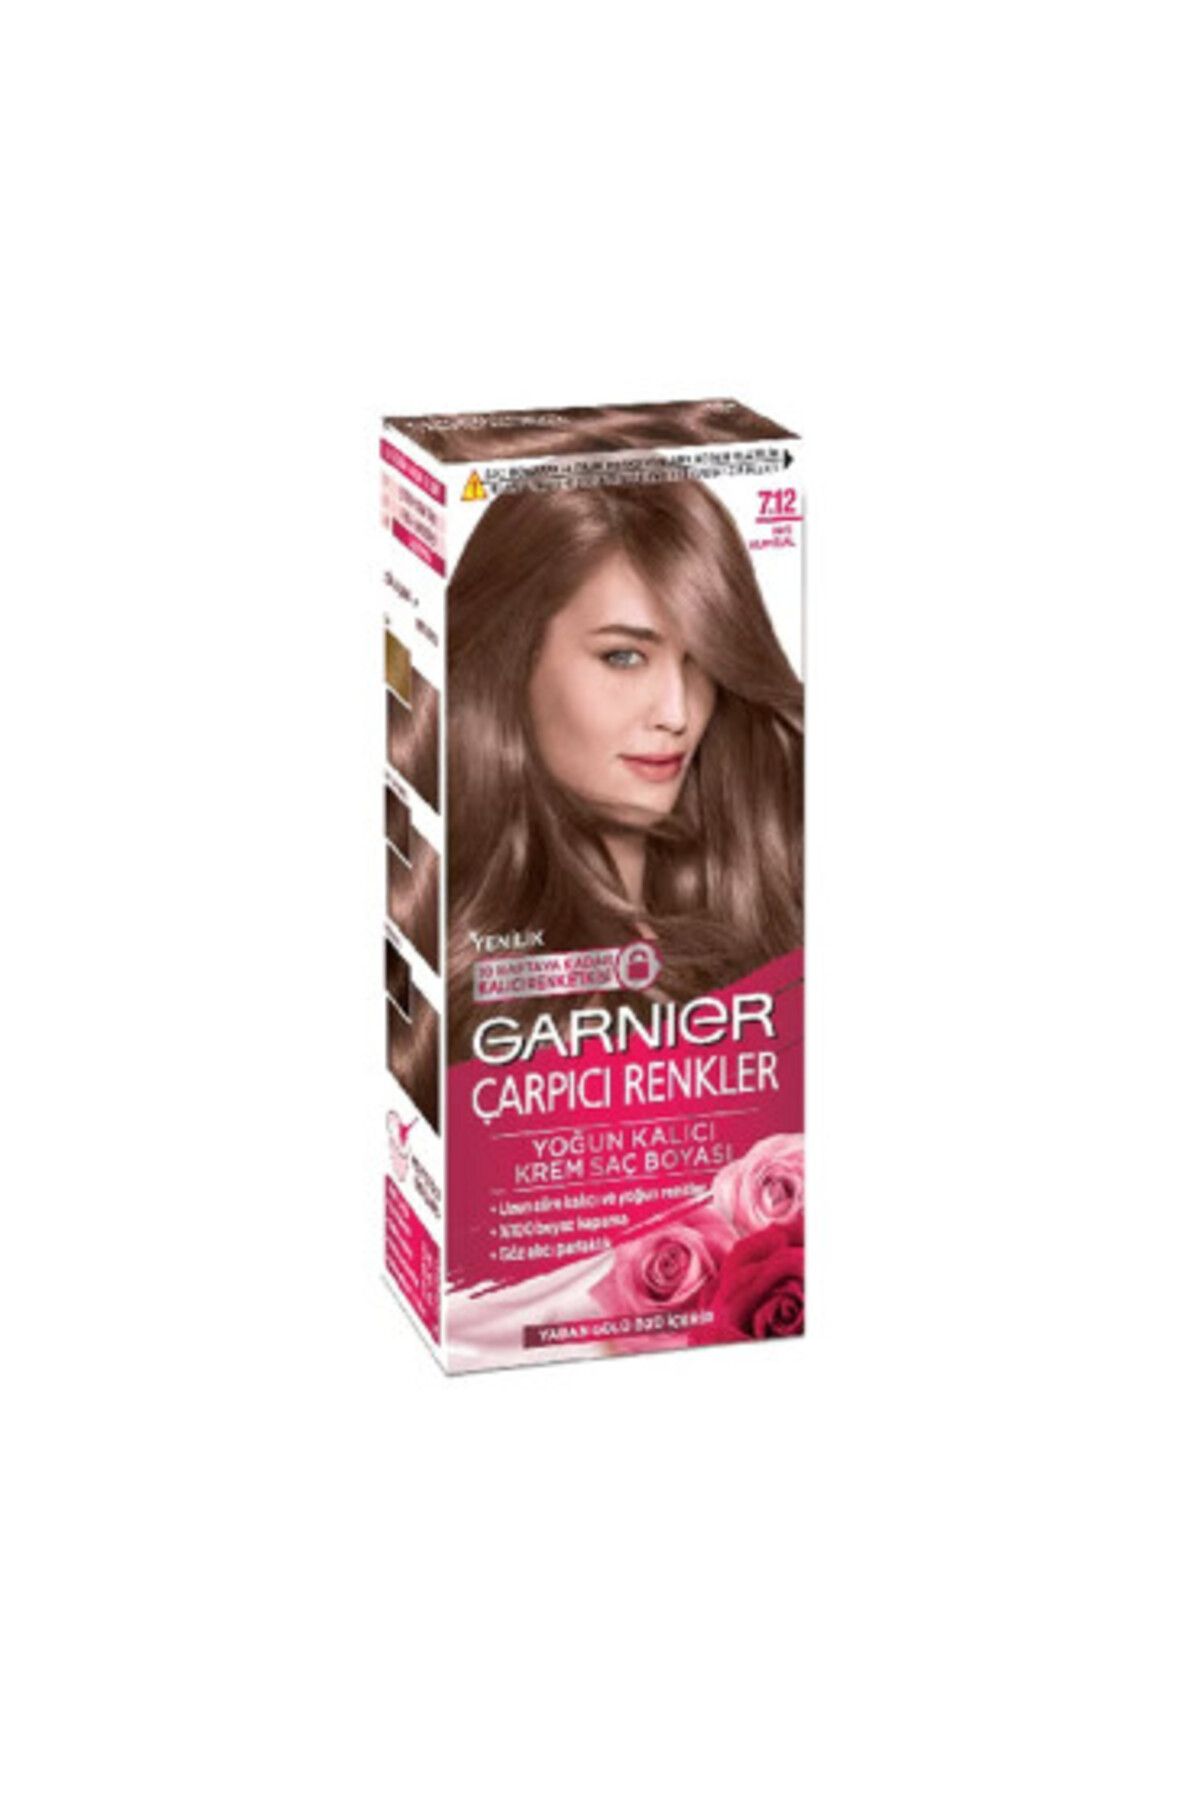 Garnier Color Sensation Çarpıcı Renkler Saç Boyası 7.12 İnci Kumral ( 1 ADET )